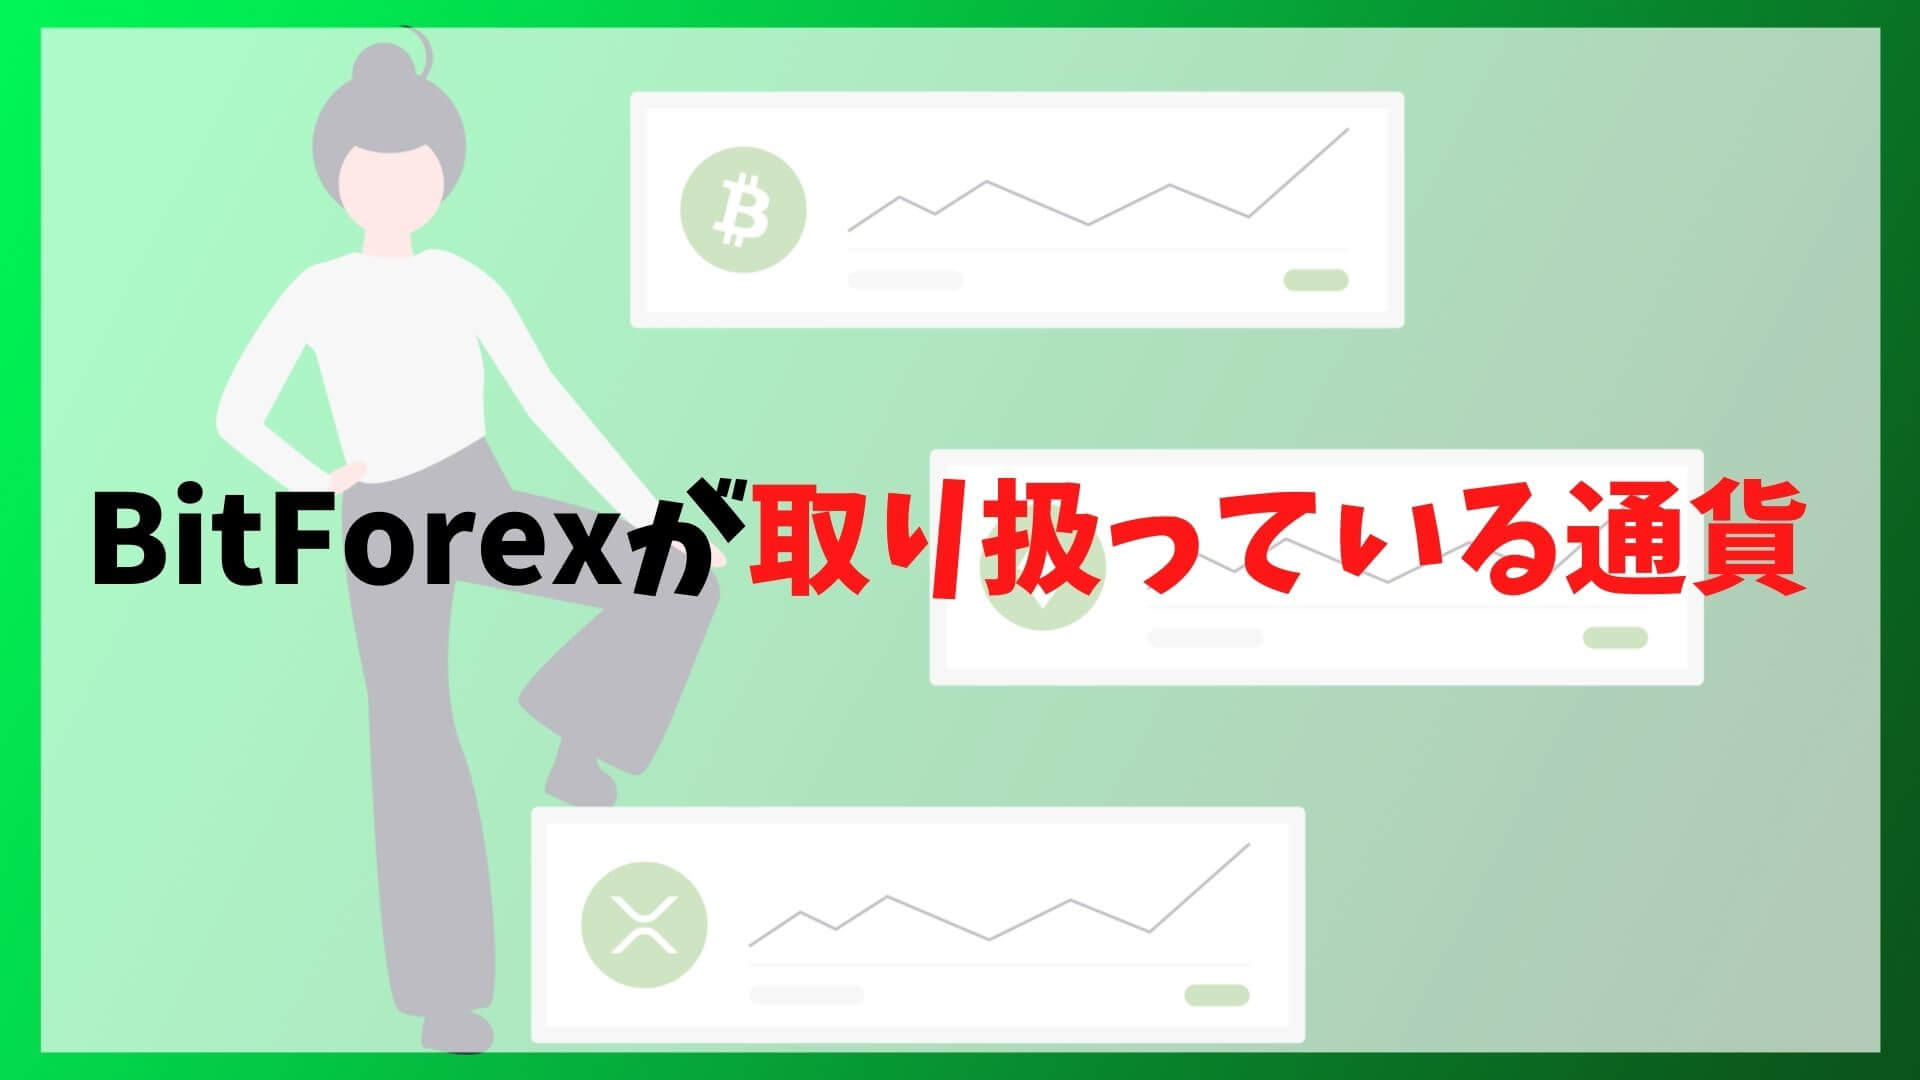 BitForex(ビットフォレックス)の取扱通貨